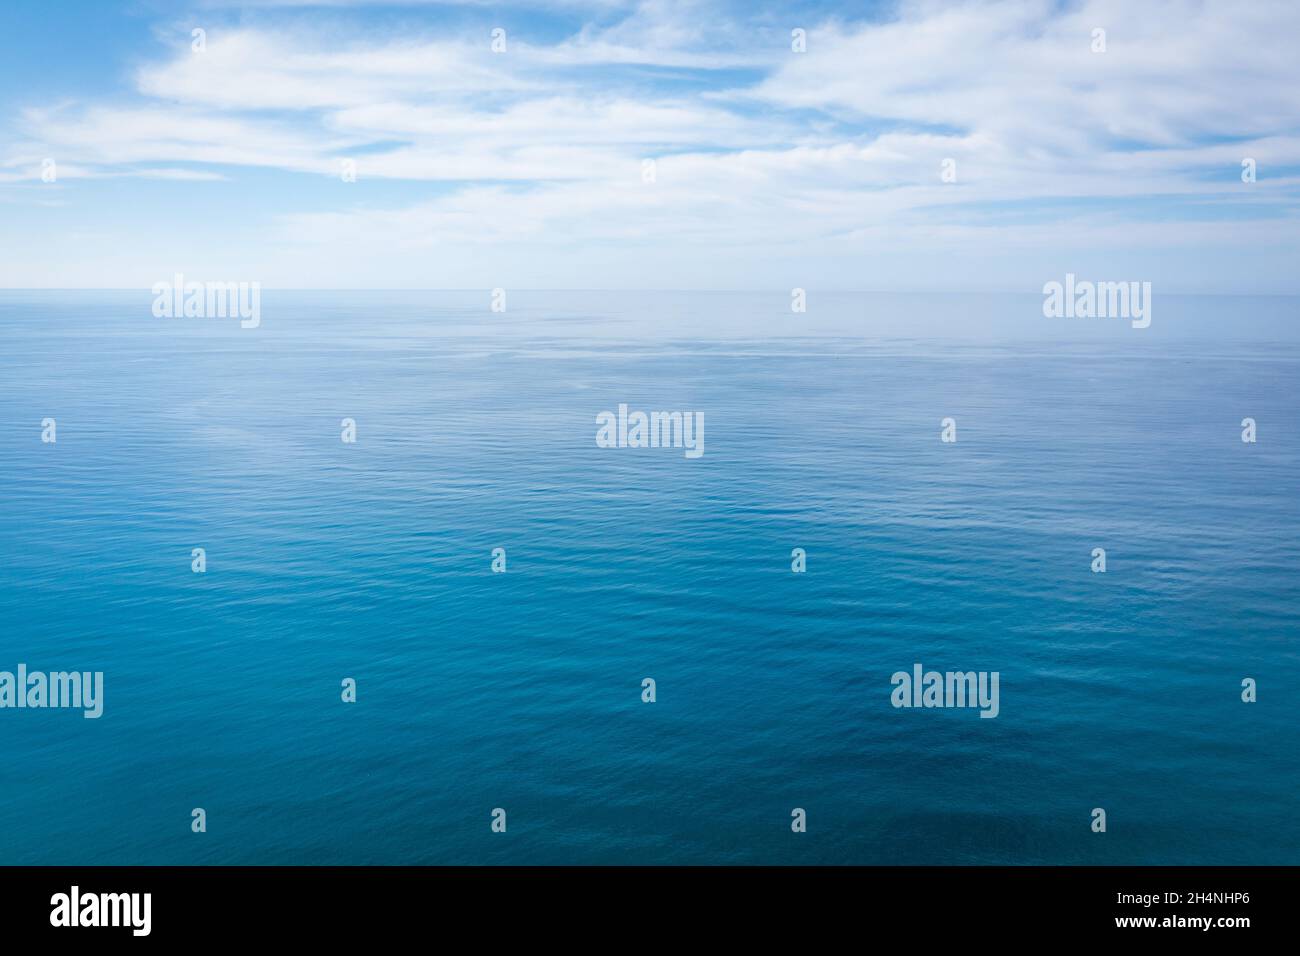 Gros plan de l'eau de mer bleu océan calme avec lumière du jour et nuages.Texture d'arrière-plan abstraite.Photo de haute qualité Banque D'Images